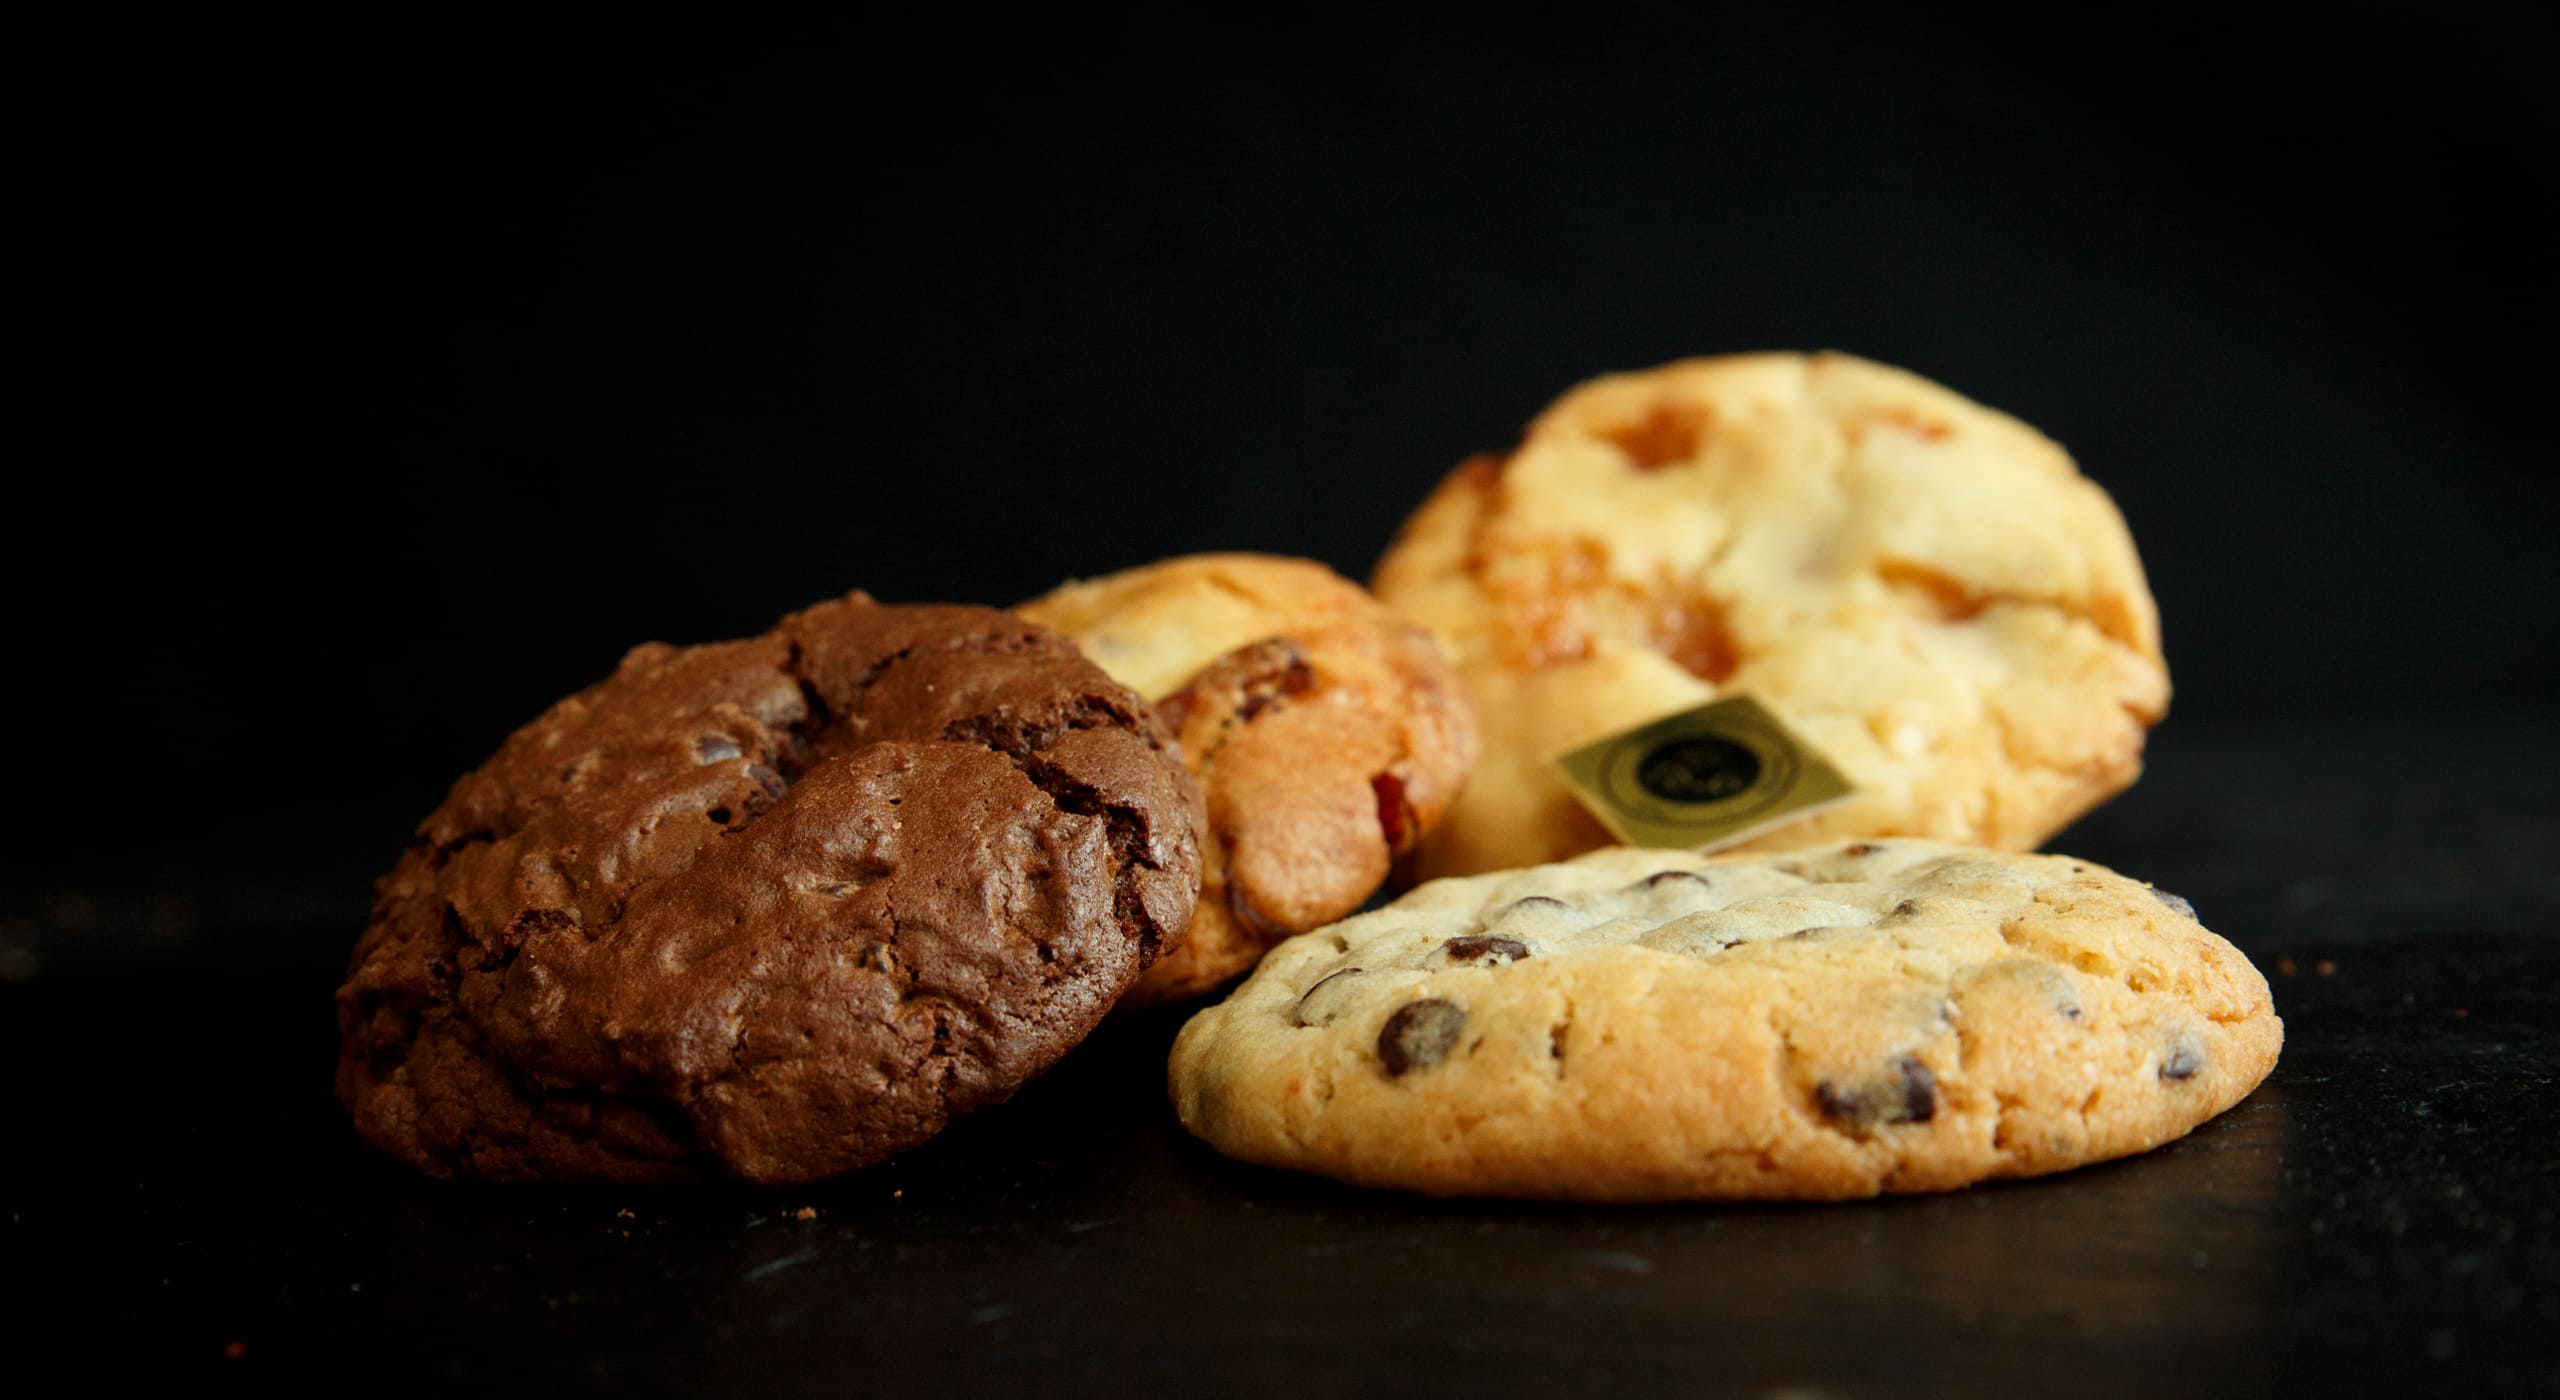 Le 18.6 Pau - Snacking - Patisserie - Pain - cookies